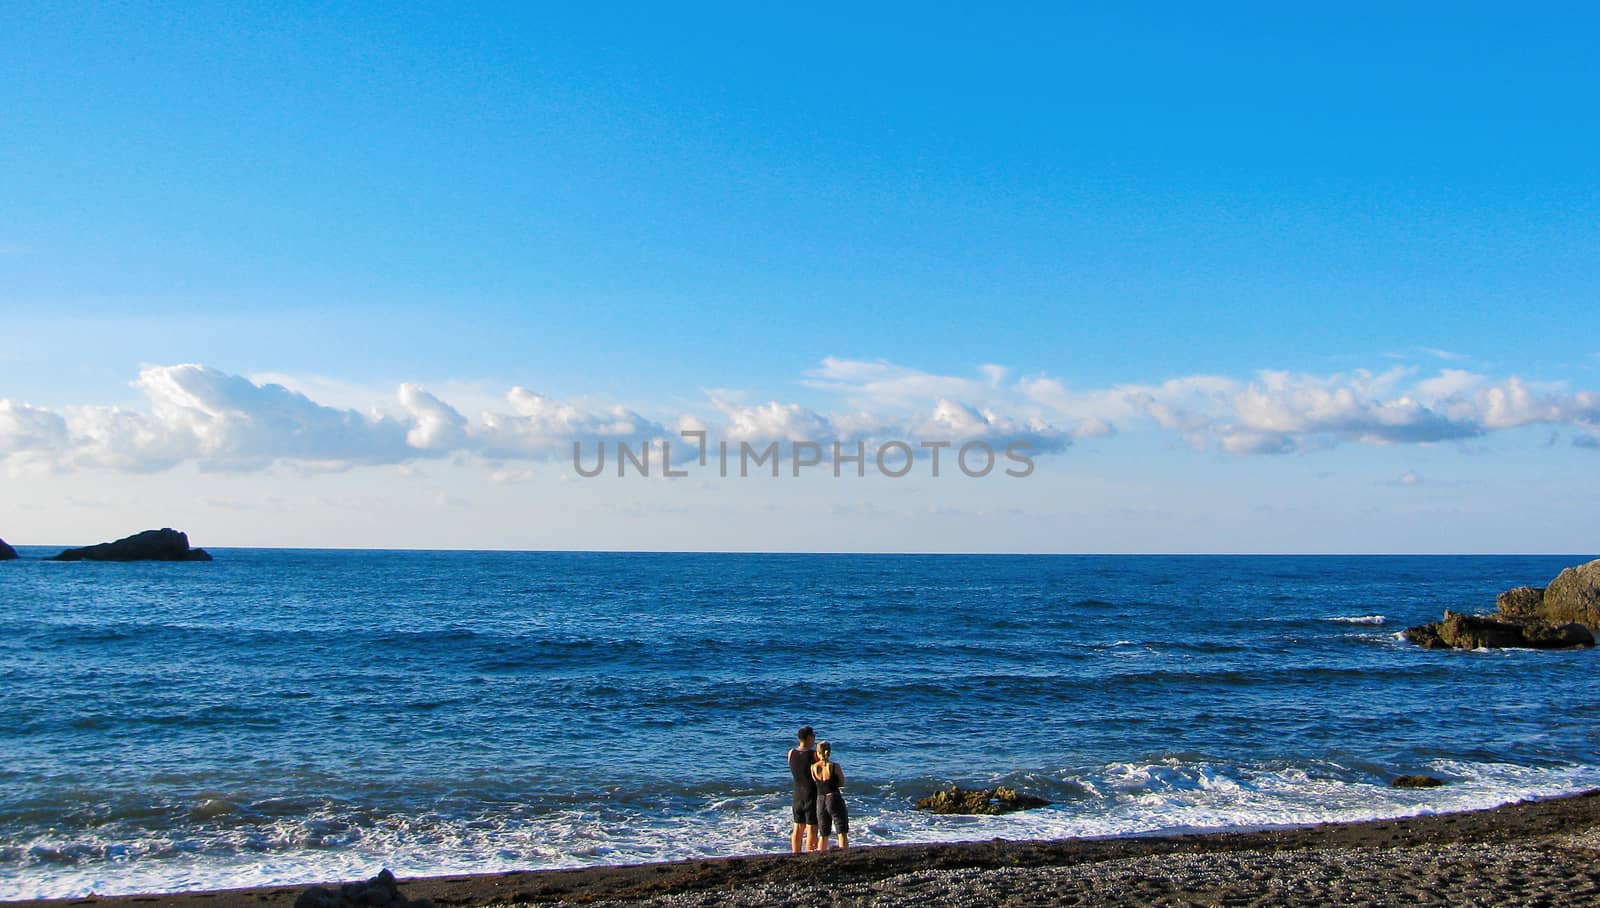 A man and a woman on the beach near the sea